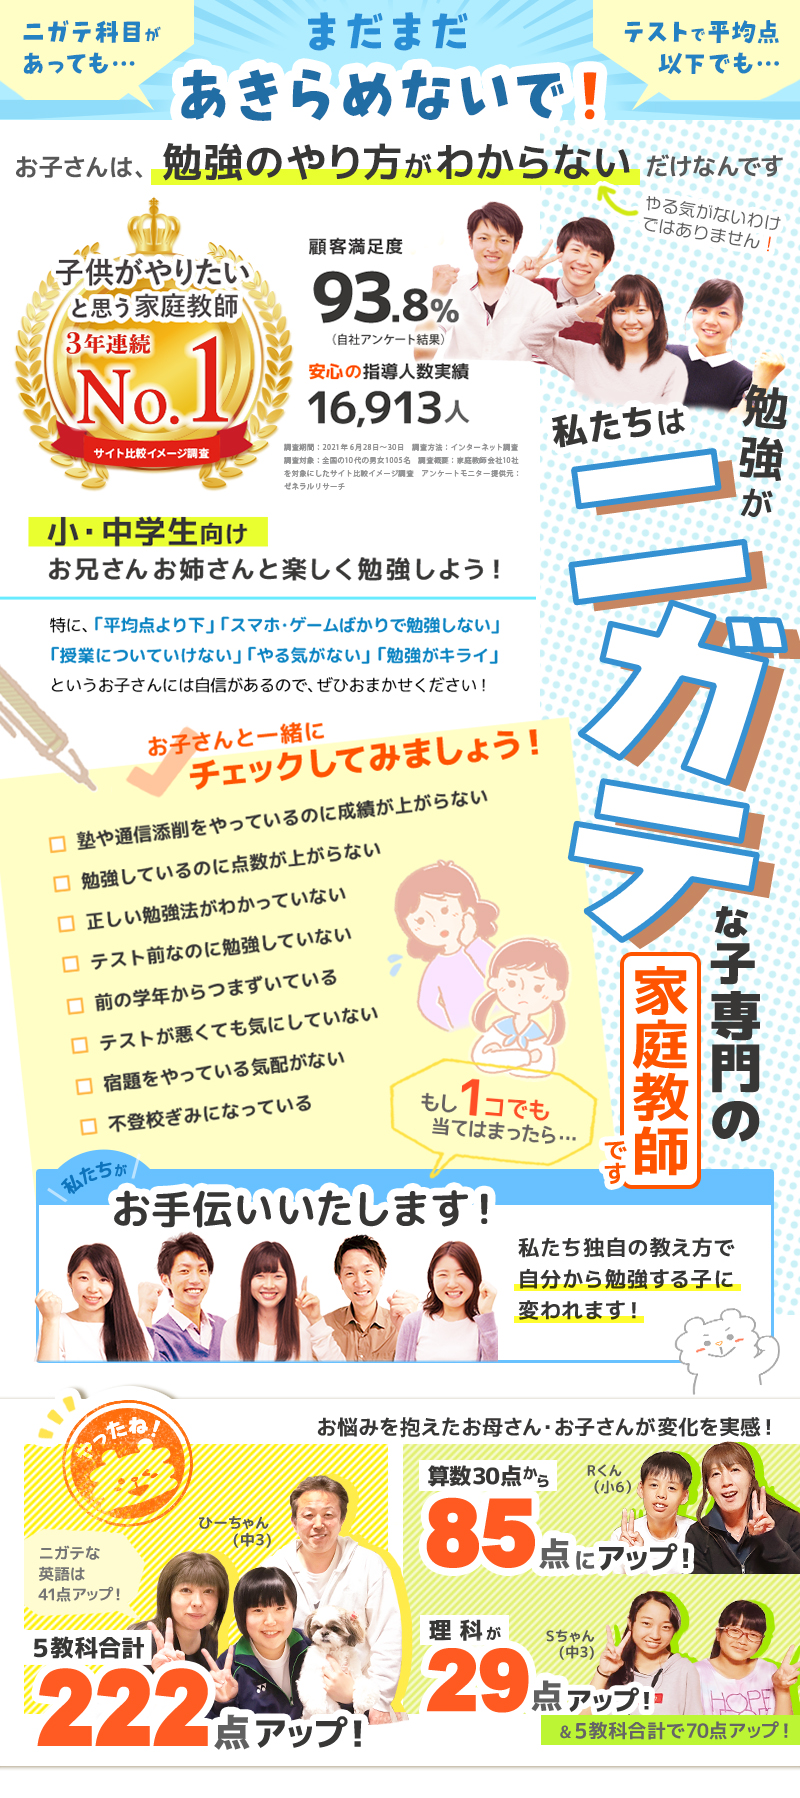 公式 北名古屋市の家庭教師 塾より安く中学生や小学生におすすめの家庭教師の先生